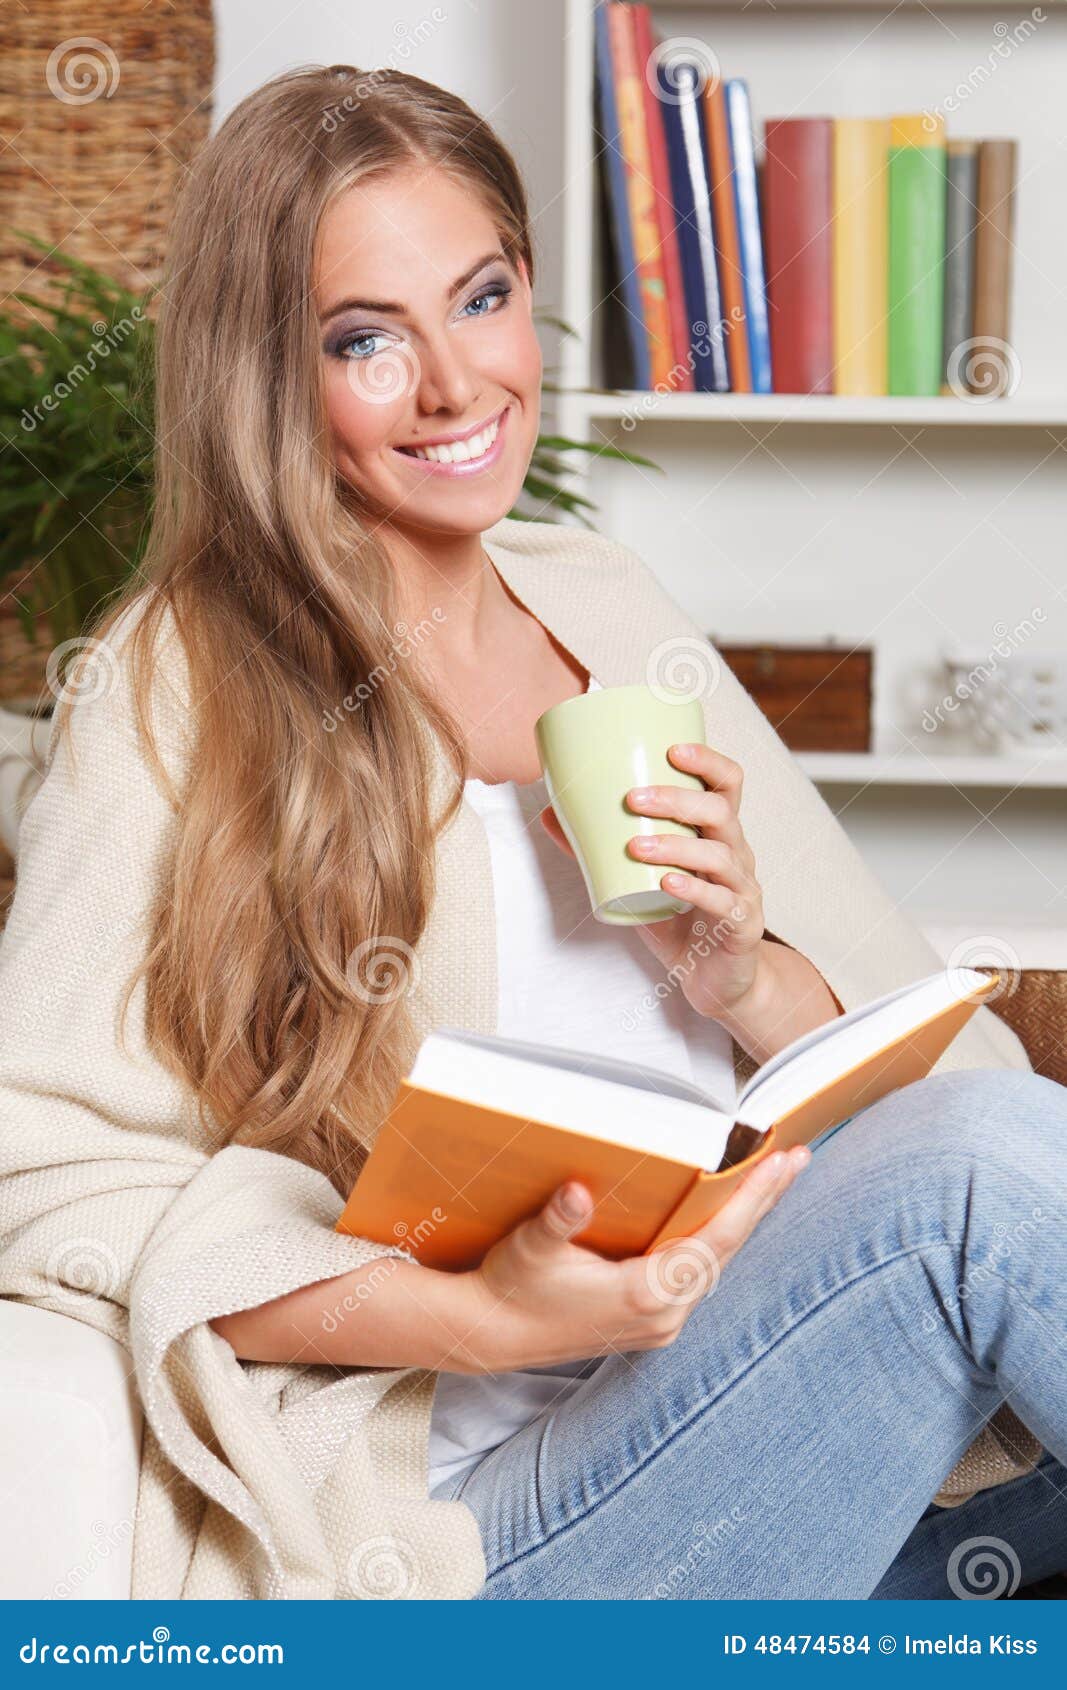 Chá bebendo da mulher feliz ao ler na sala de visitas